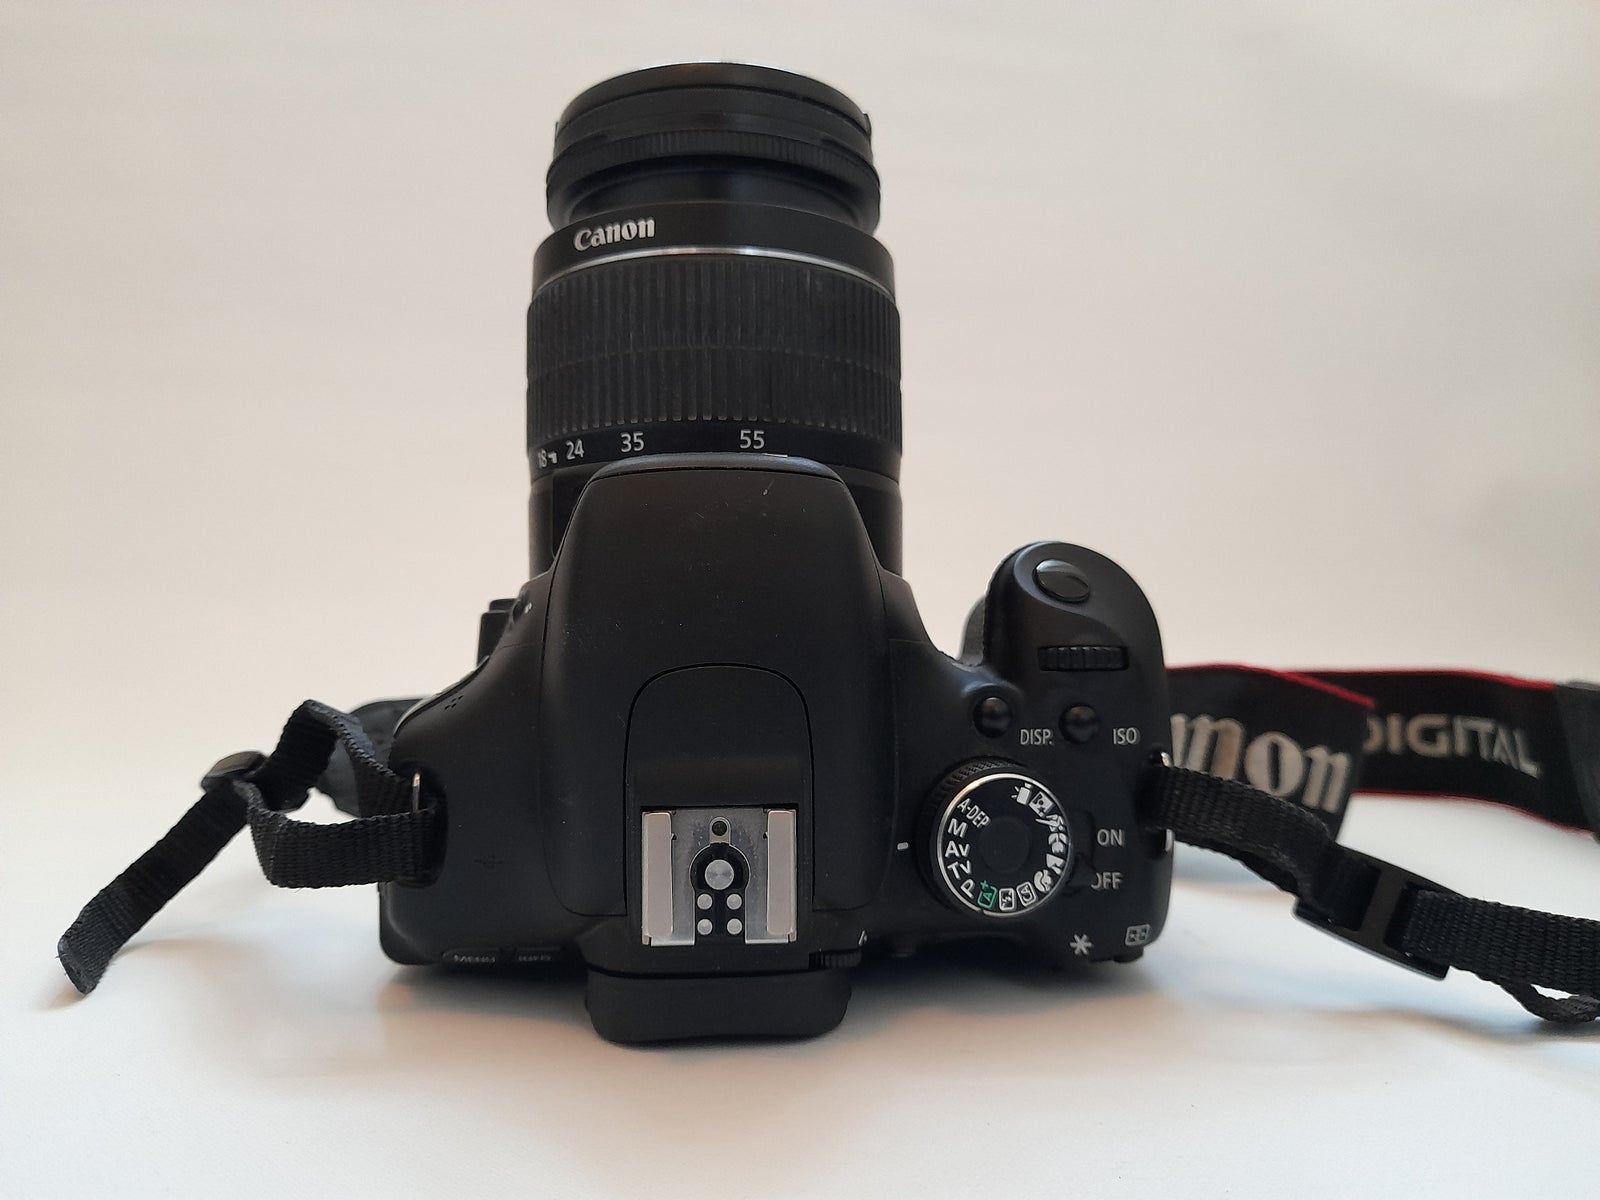 Canon, CANON EOS 600D, 18 megapixels